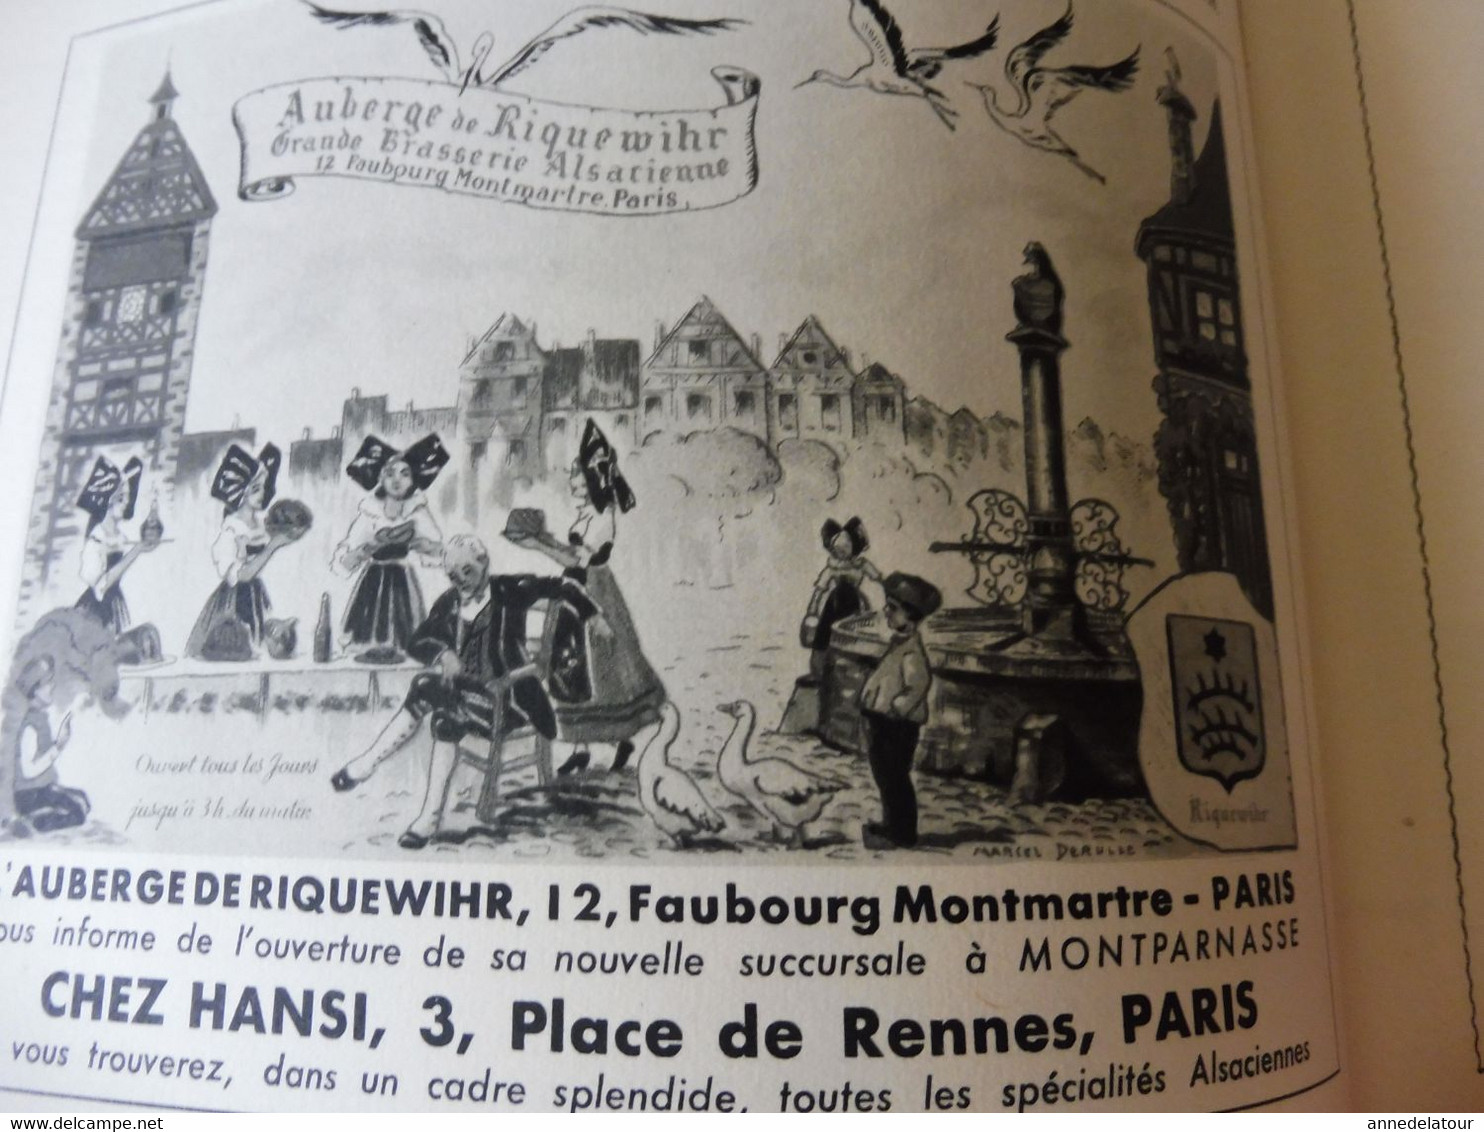 ALSACE 1952 LA FRANCE À TABLE: Hansi, Belfort,Colmar, Ribeauville, Vieil-Armand, Riquewihr, Than,Recettes culinaires;Etc